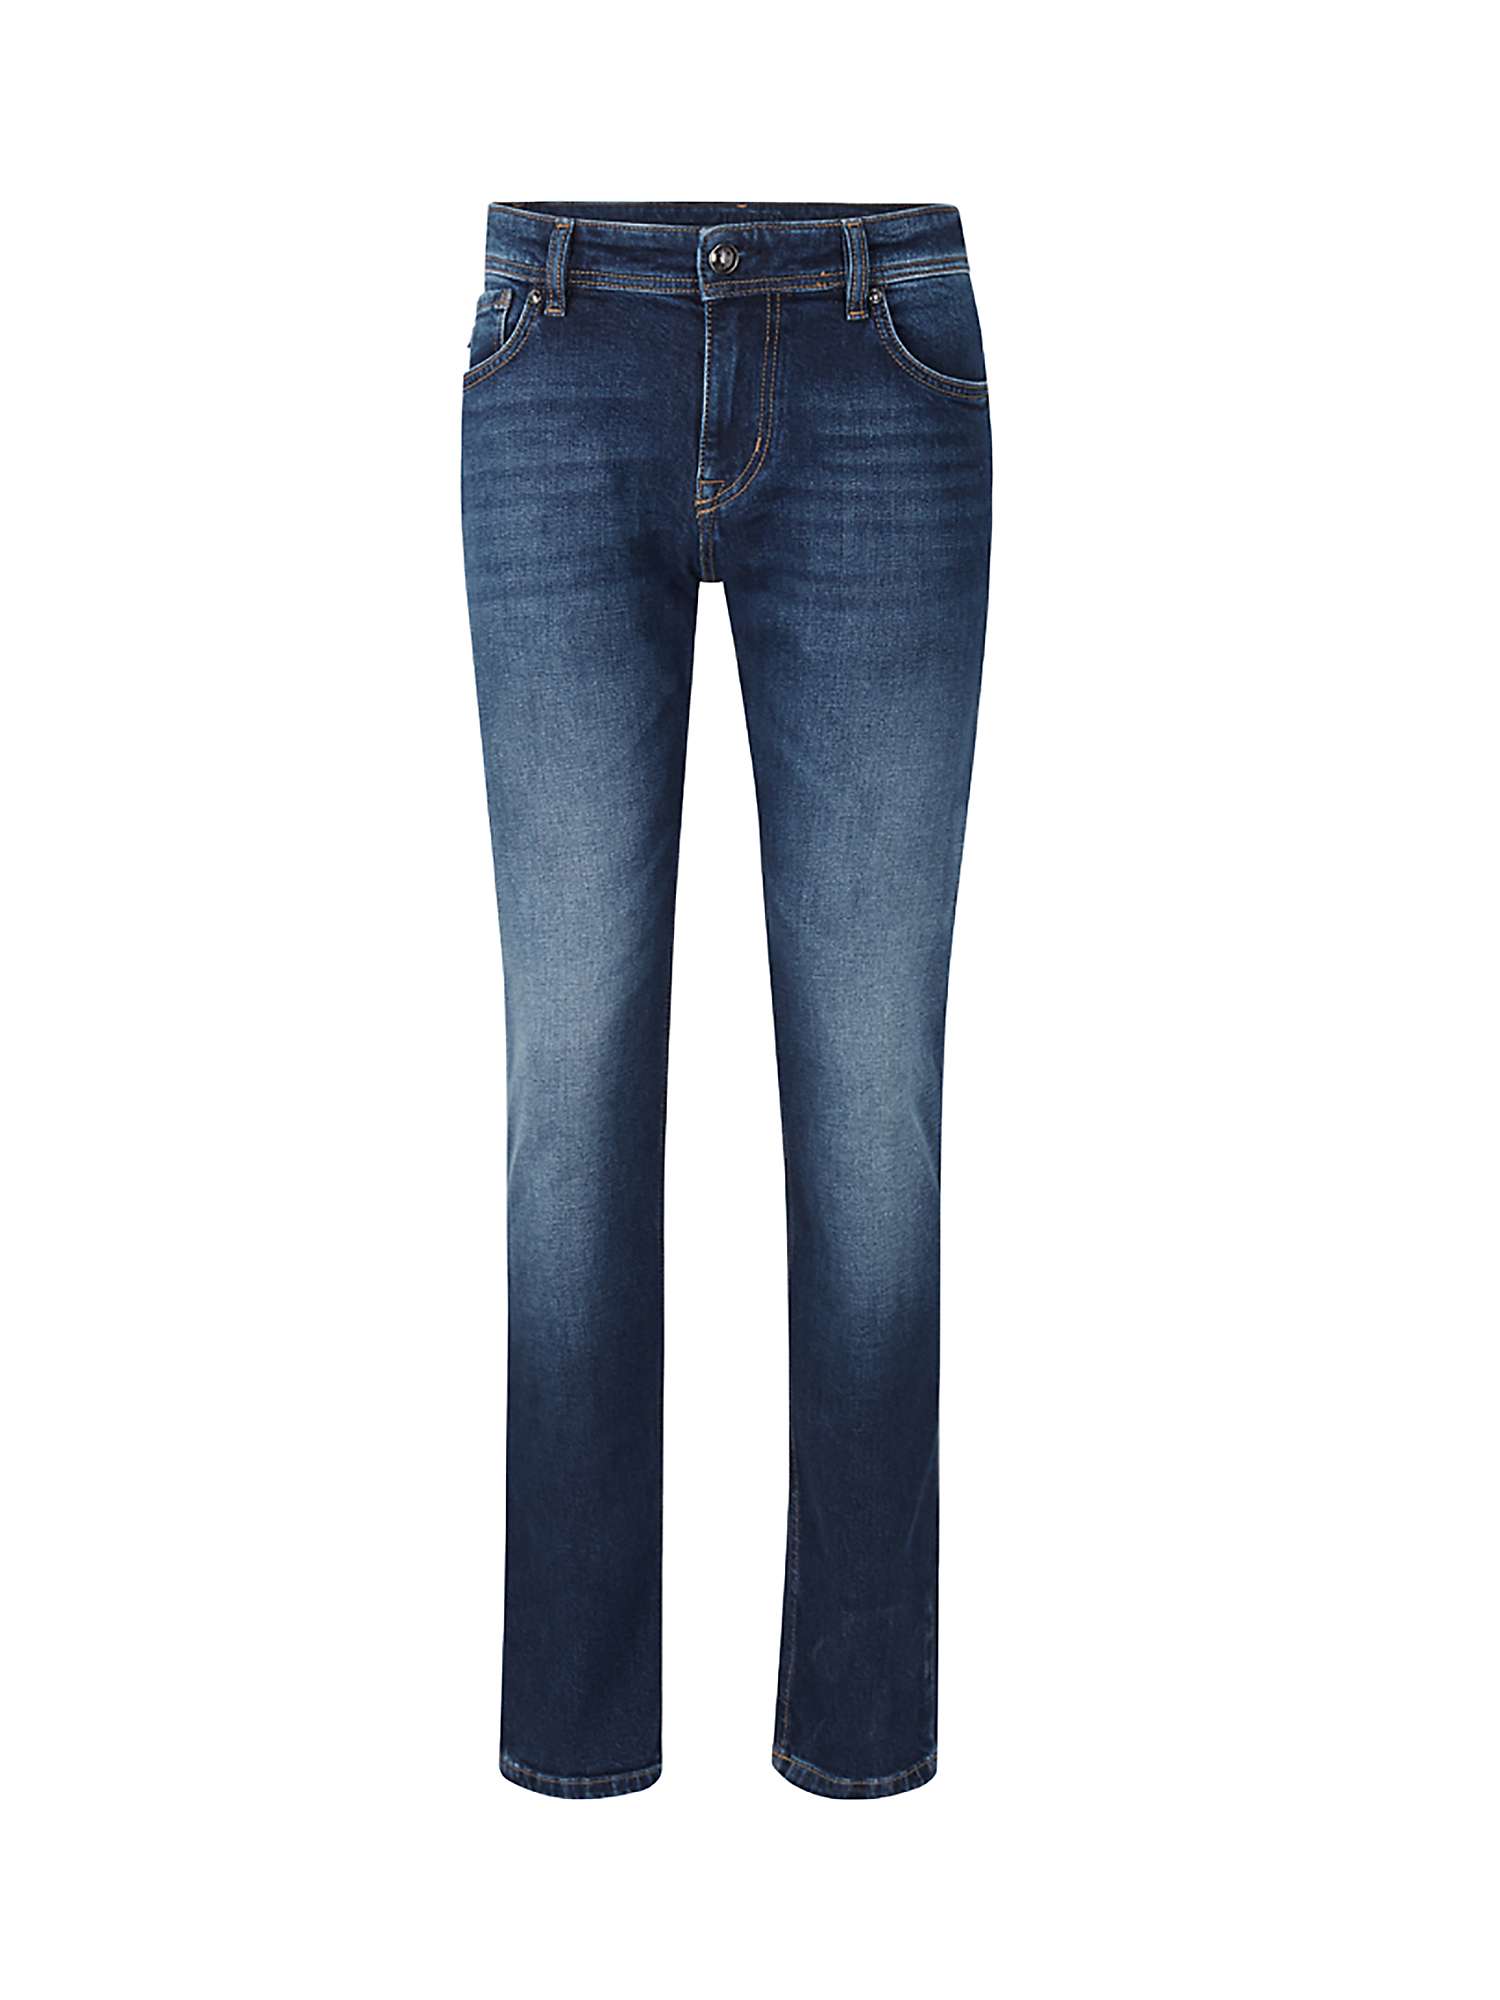 Buy JOOP! Hamond Slim Fit Jeans Online at johnlewis.com